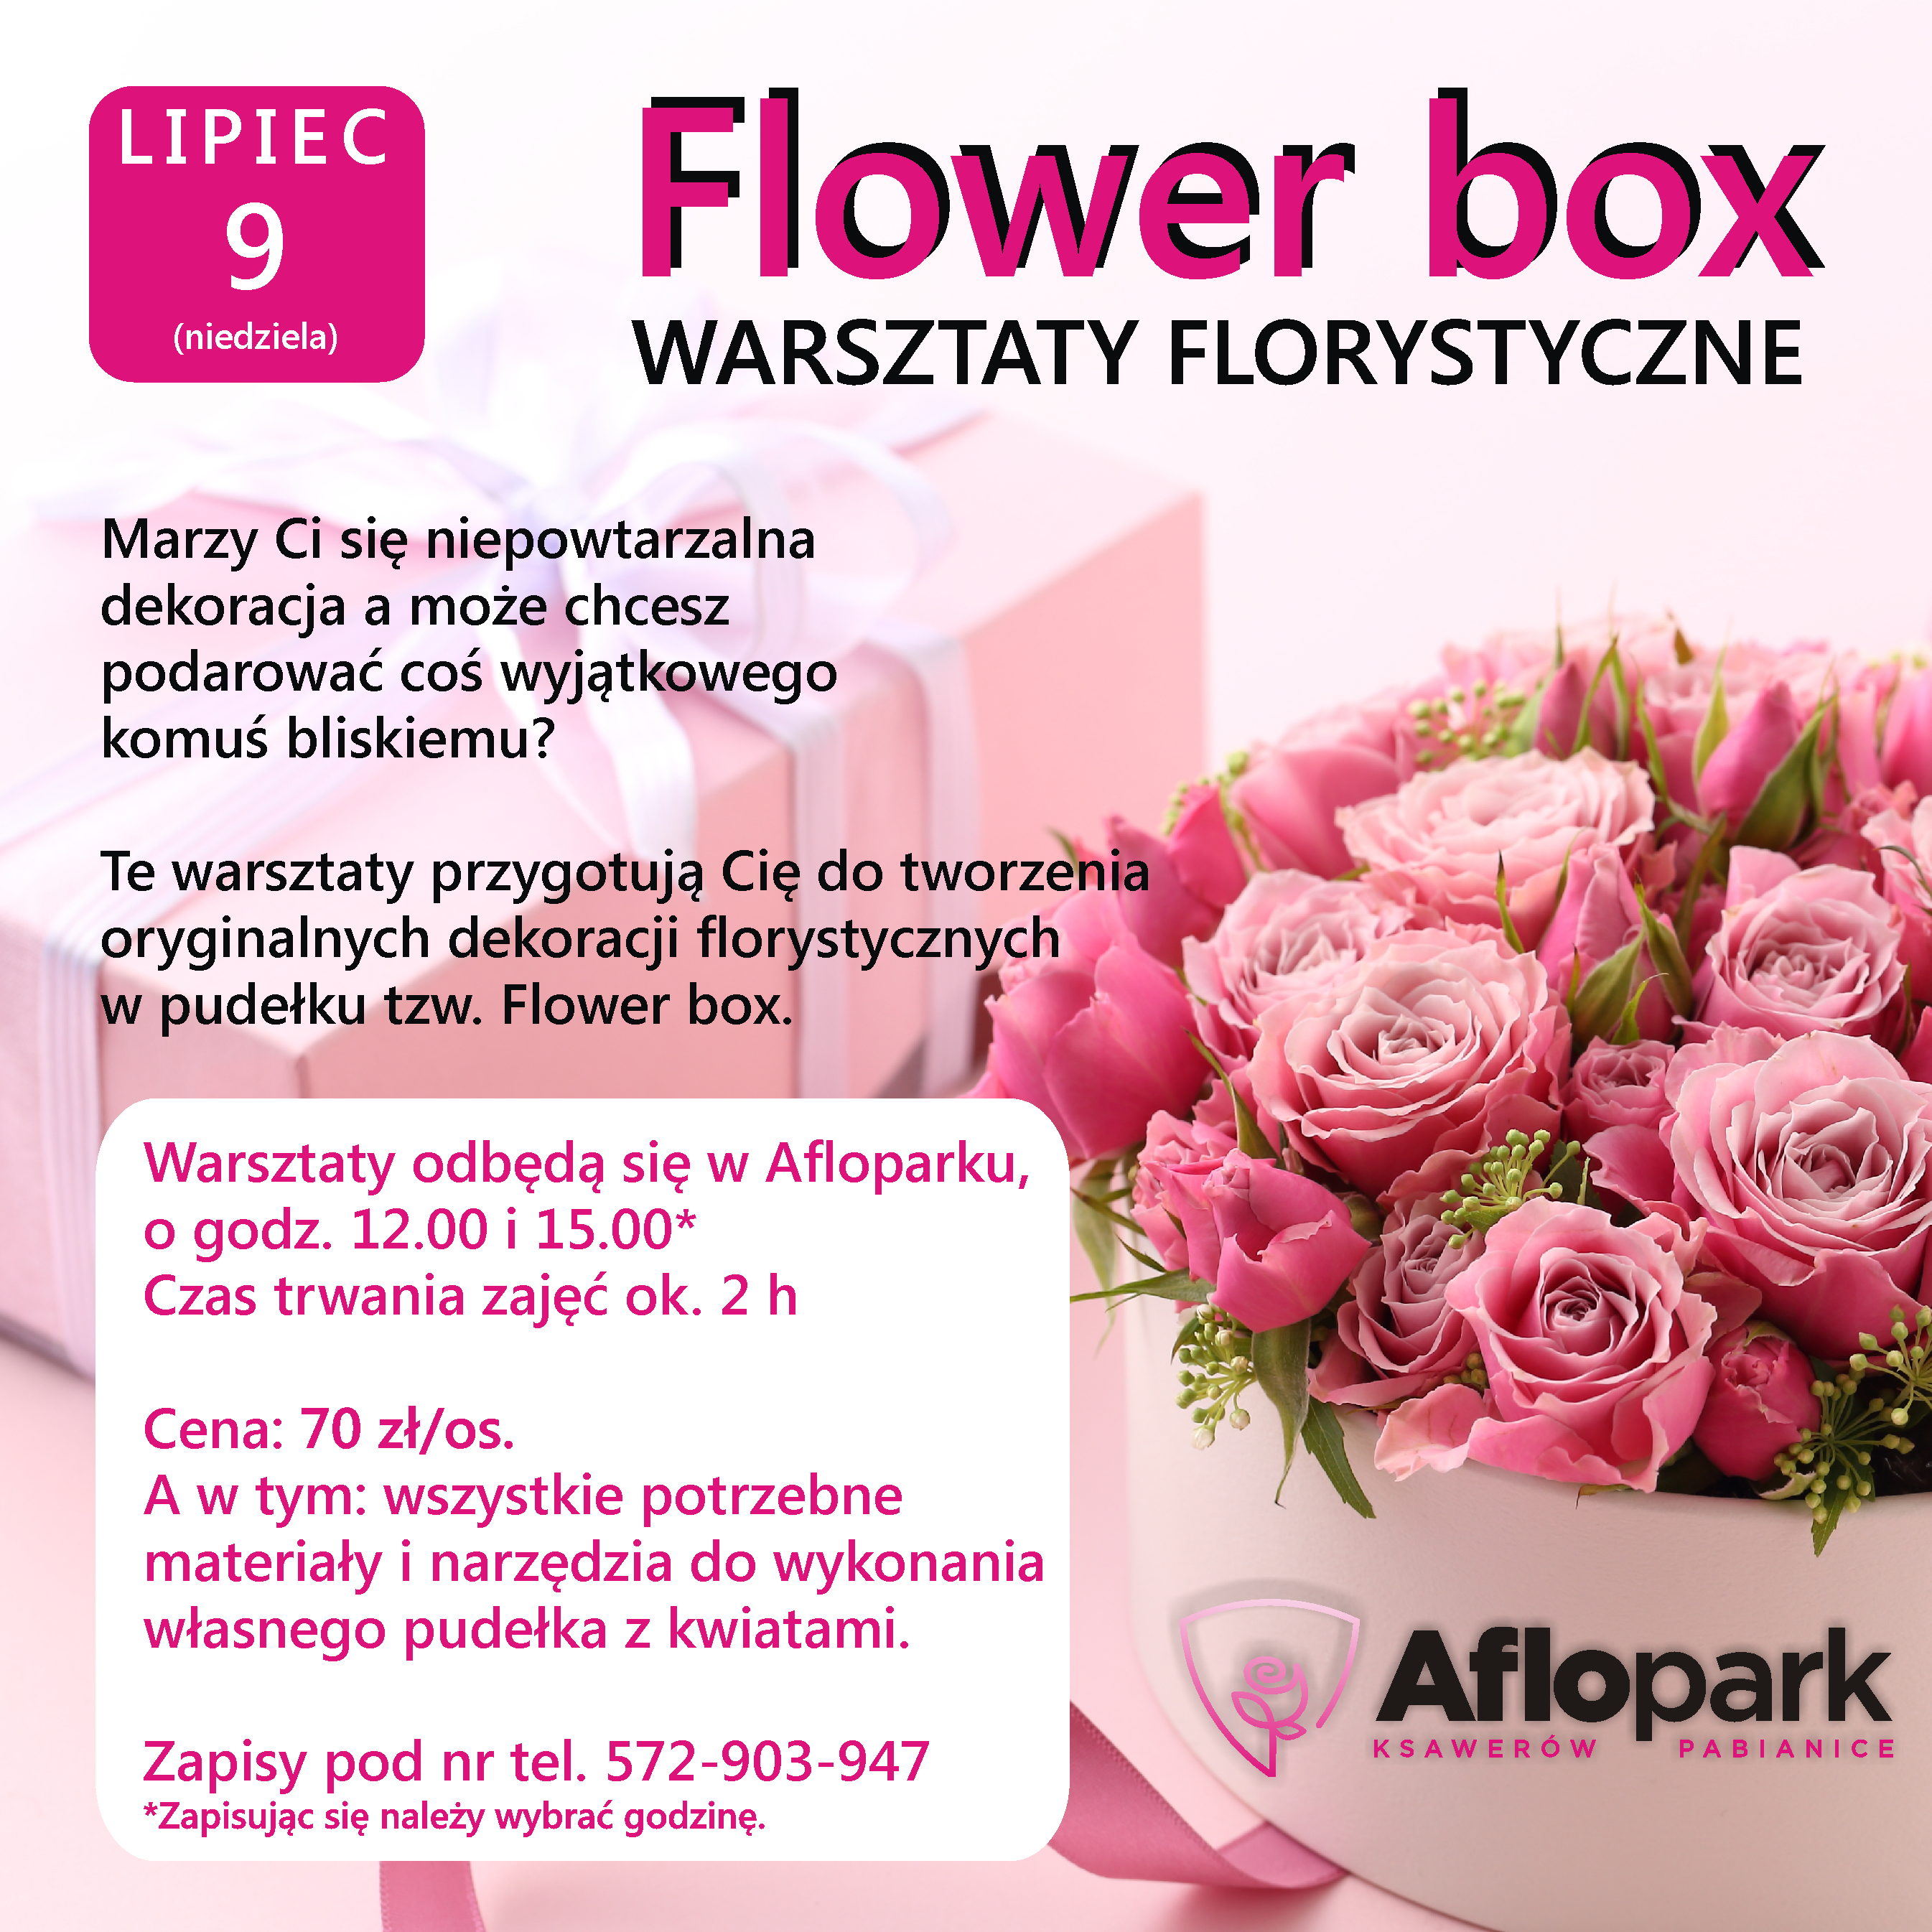 Stwórz swój własny flower box!